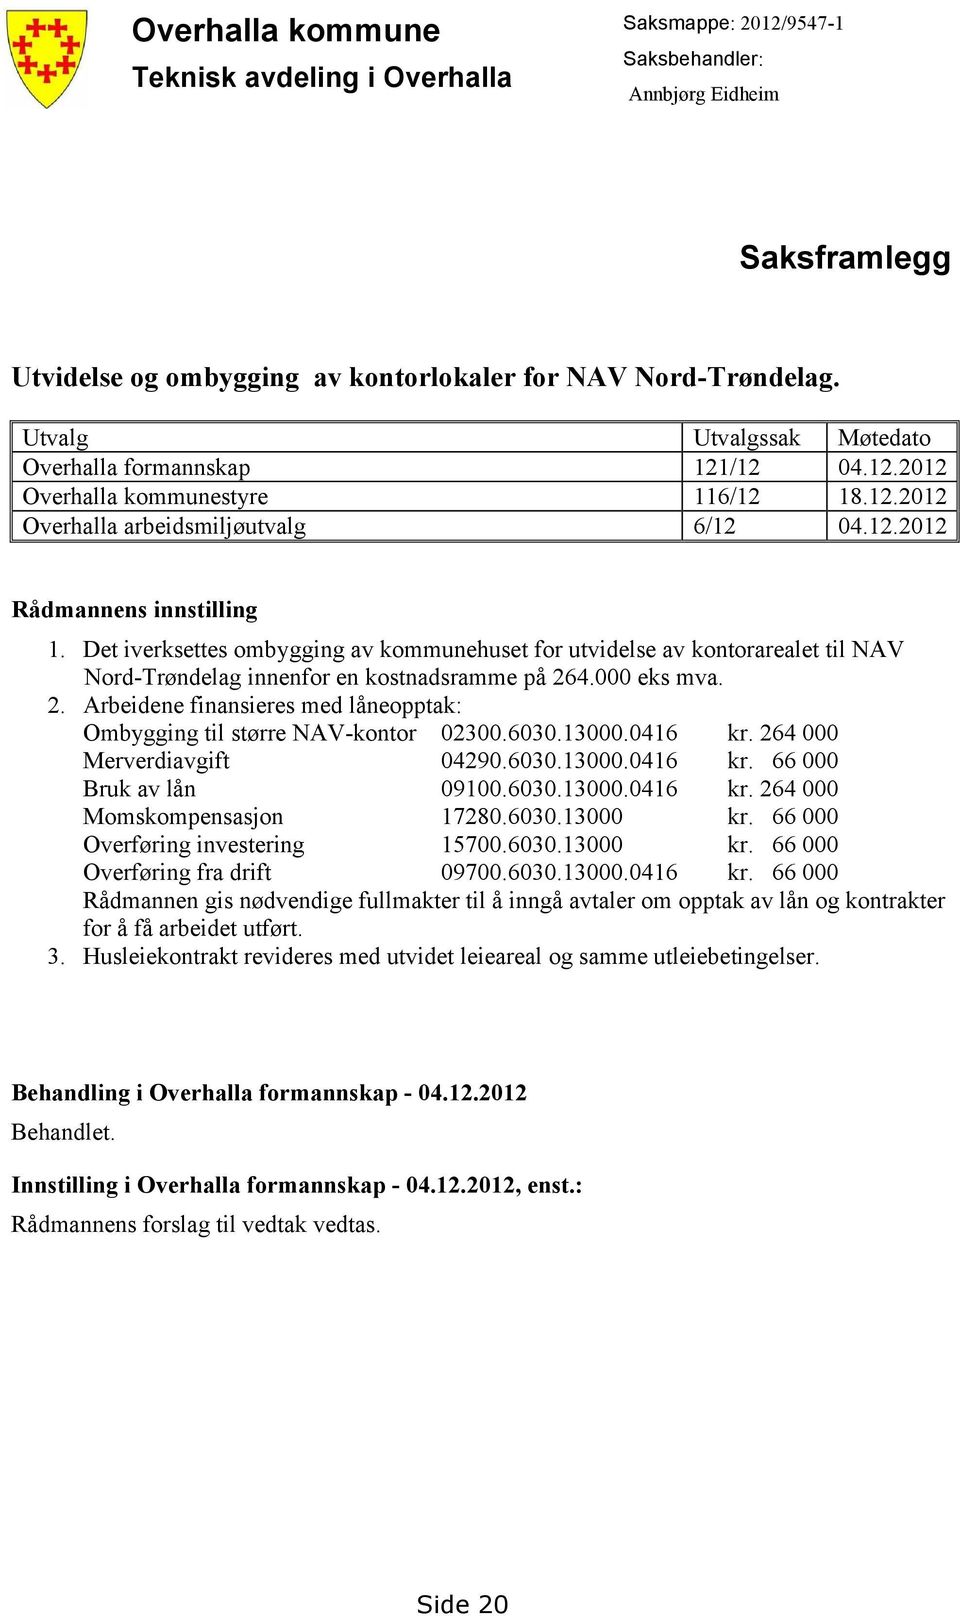 Det iverksettes ombygging av kommunehuset for utvidelse av kontorarealet til NAV Nord-Trøndelag innenfor en kostnadsramme på 26